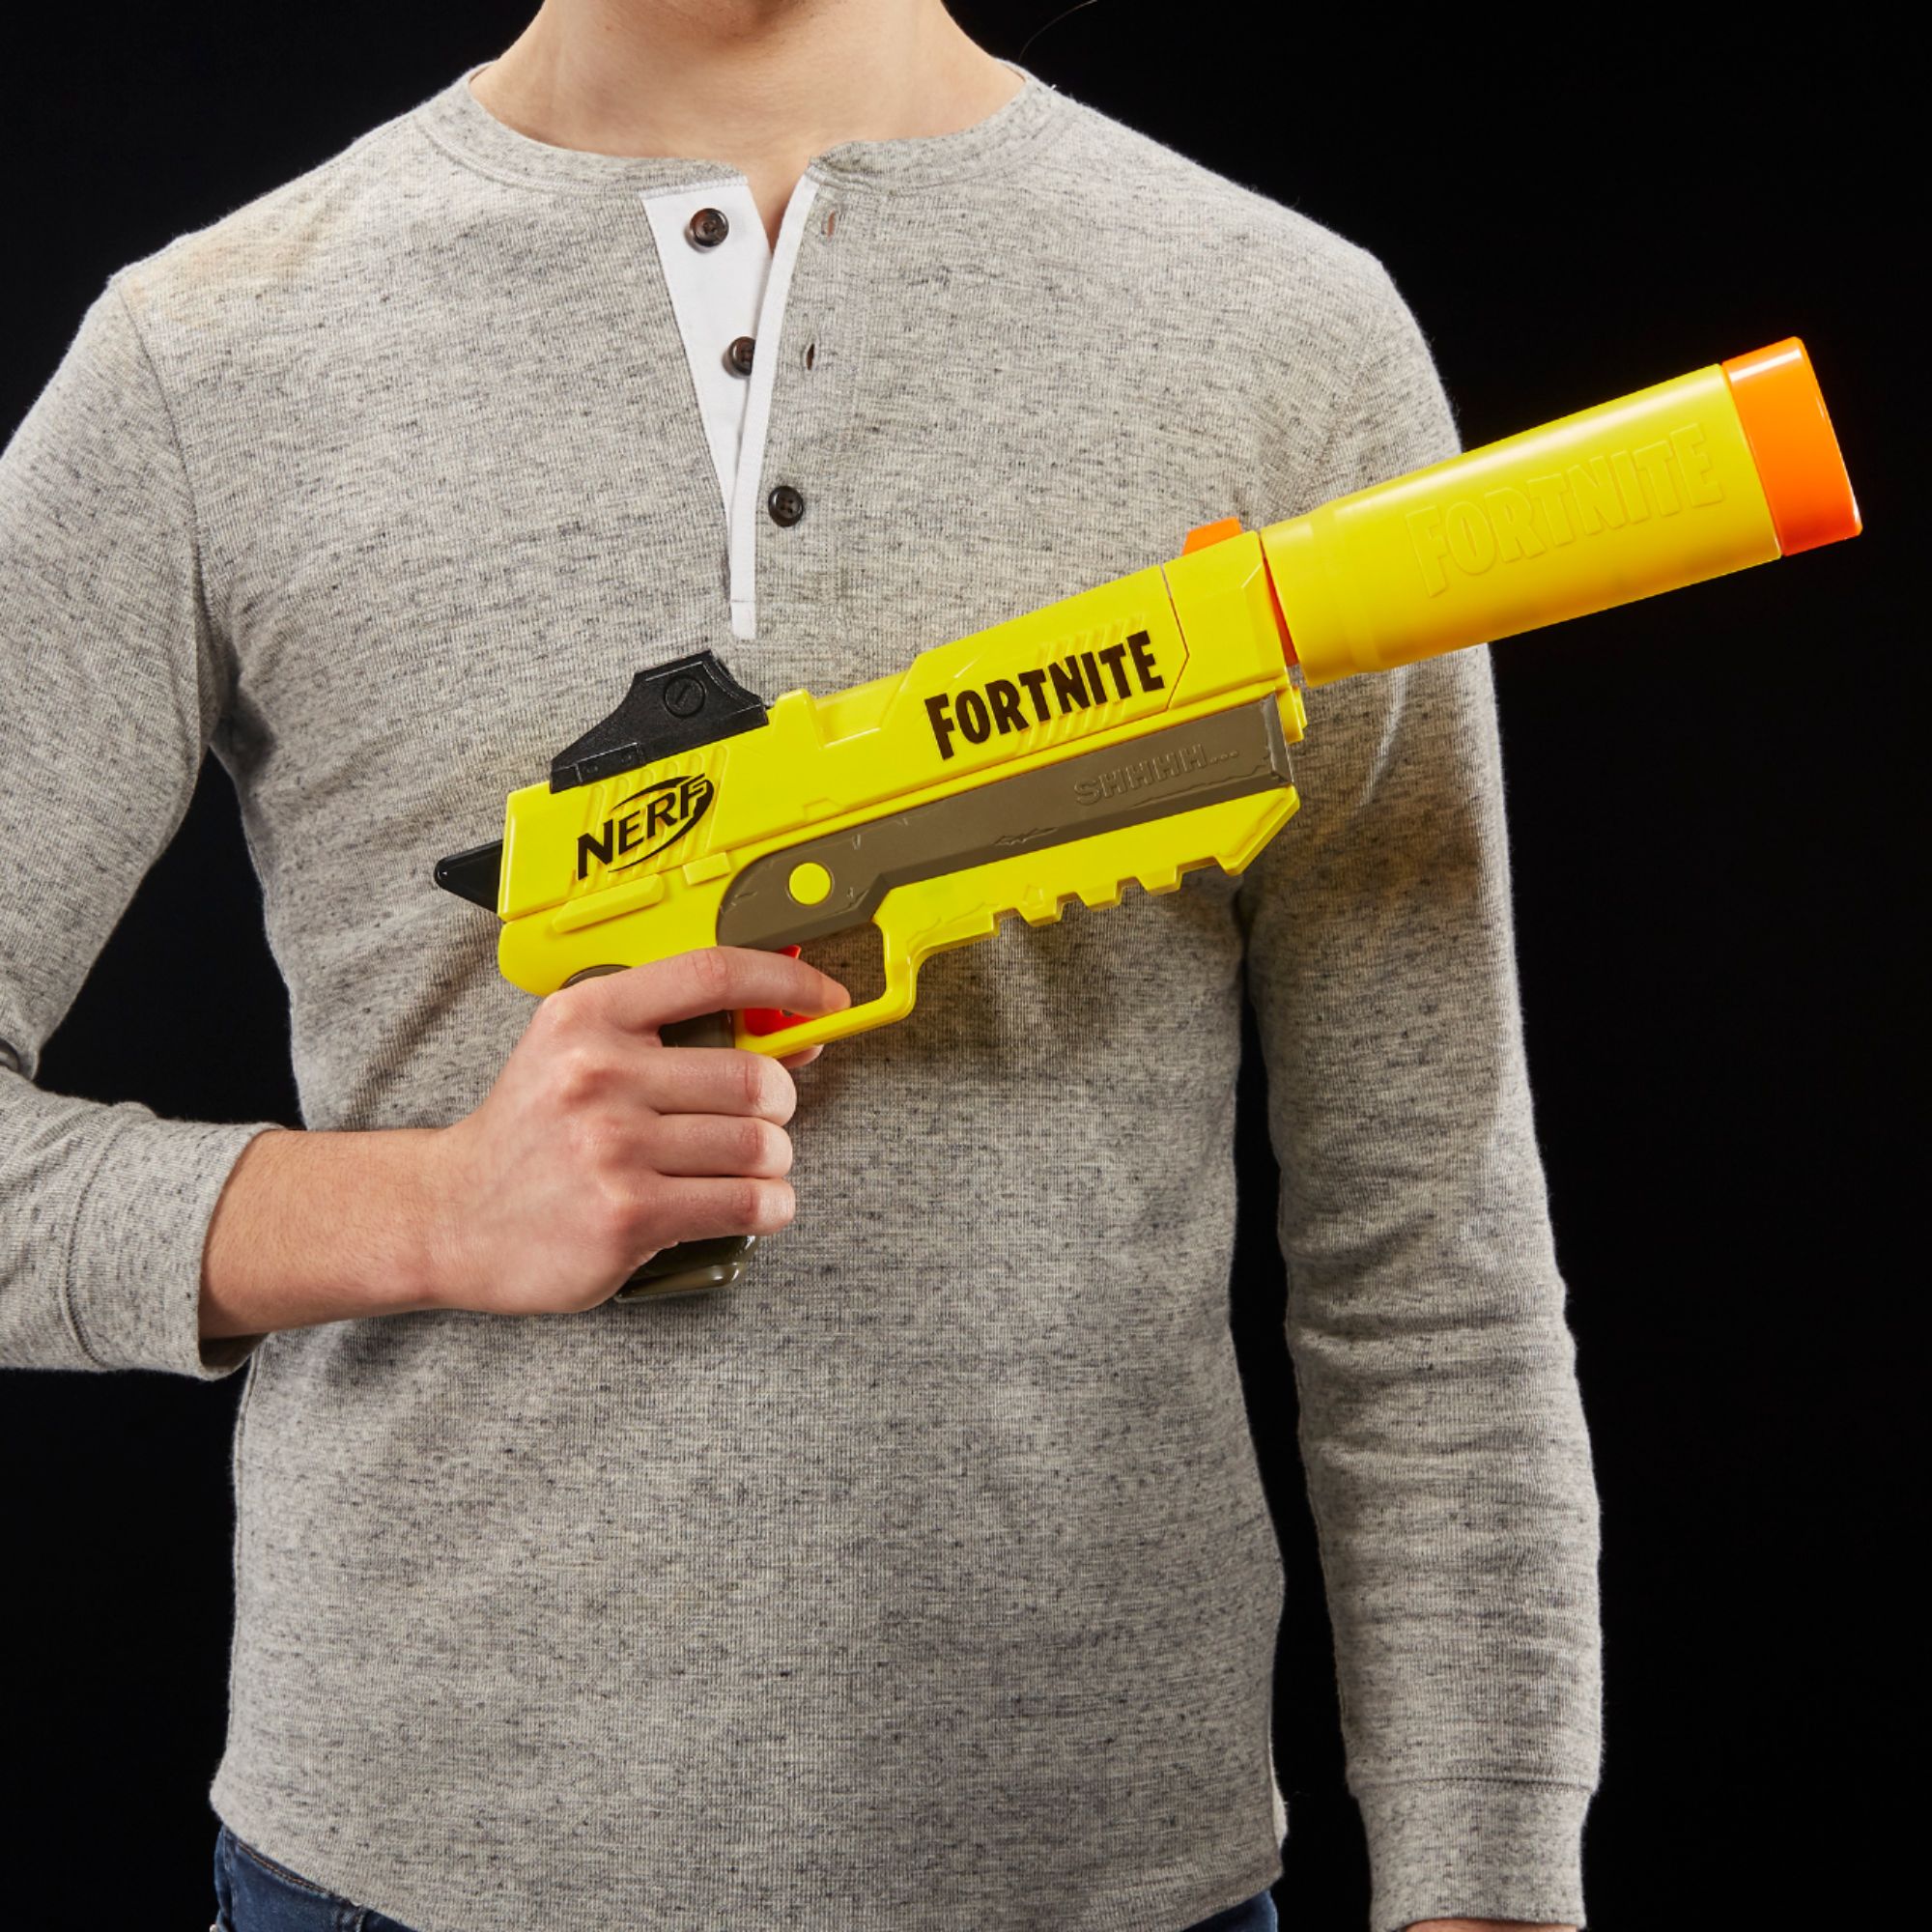 Nerf Fortnite Sp-L Elite Dart Blaster Replica Pistol E6717 w/6 DARTS IN STOCK 